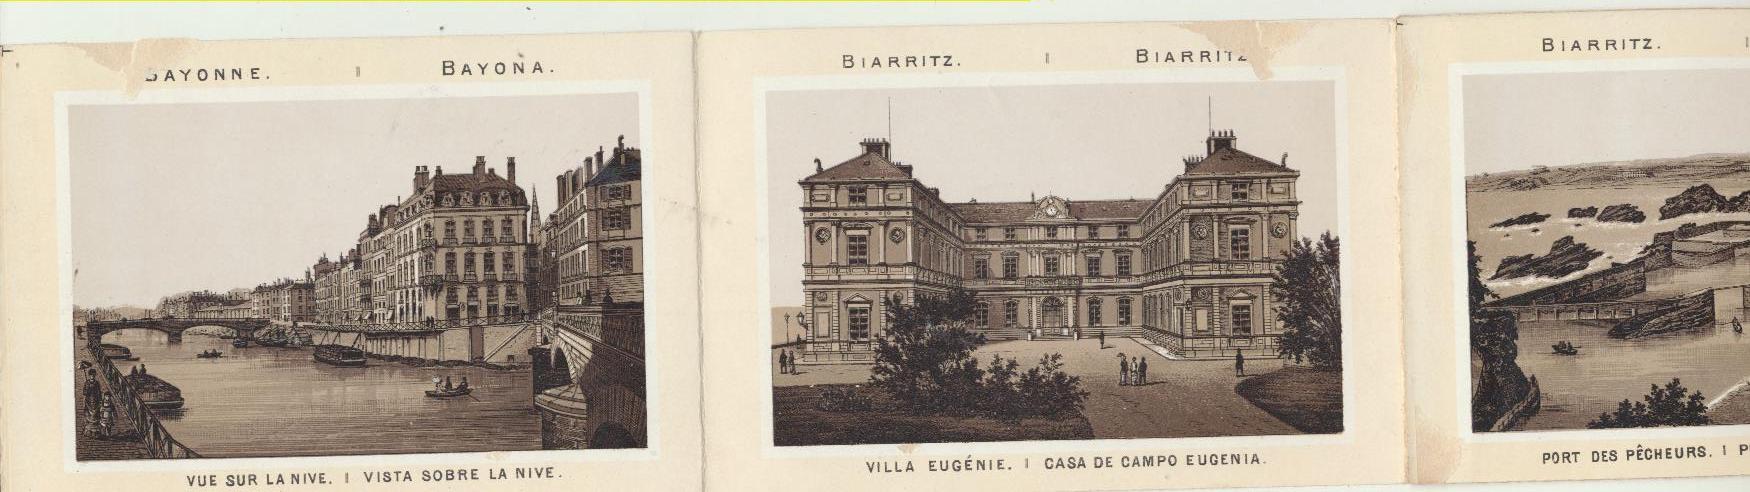 Tira de 8 postales en acordeón de Bayona y Biarritz. Principios de siglo XX